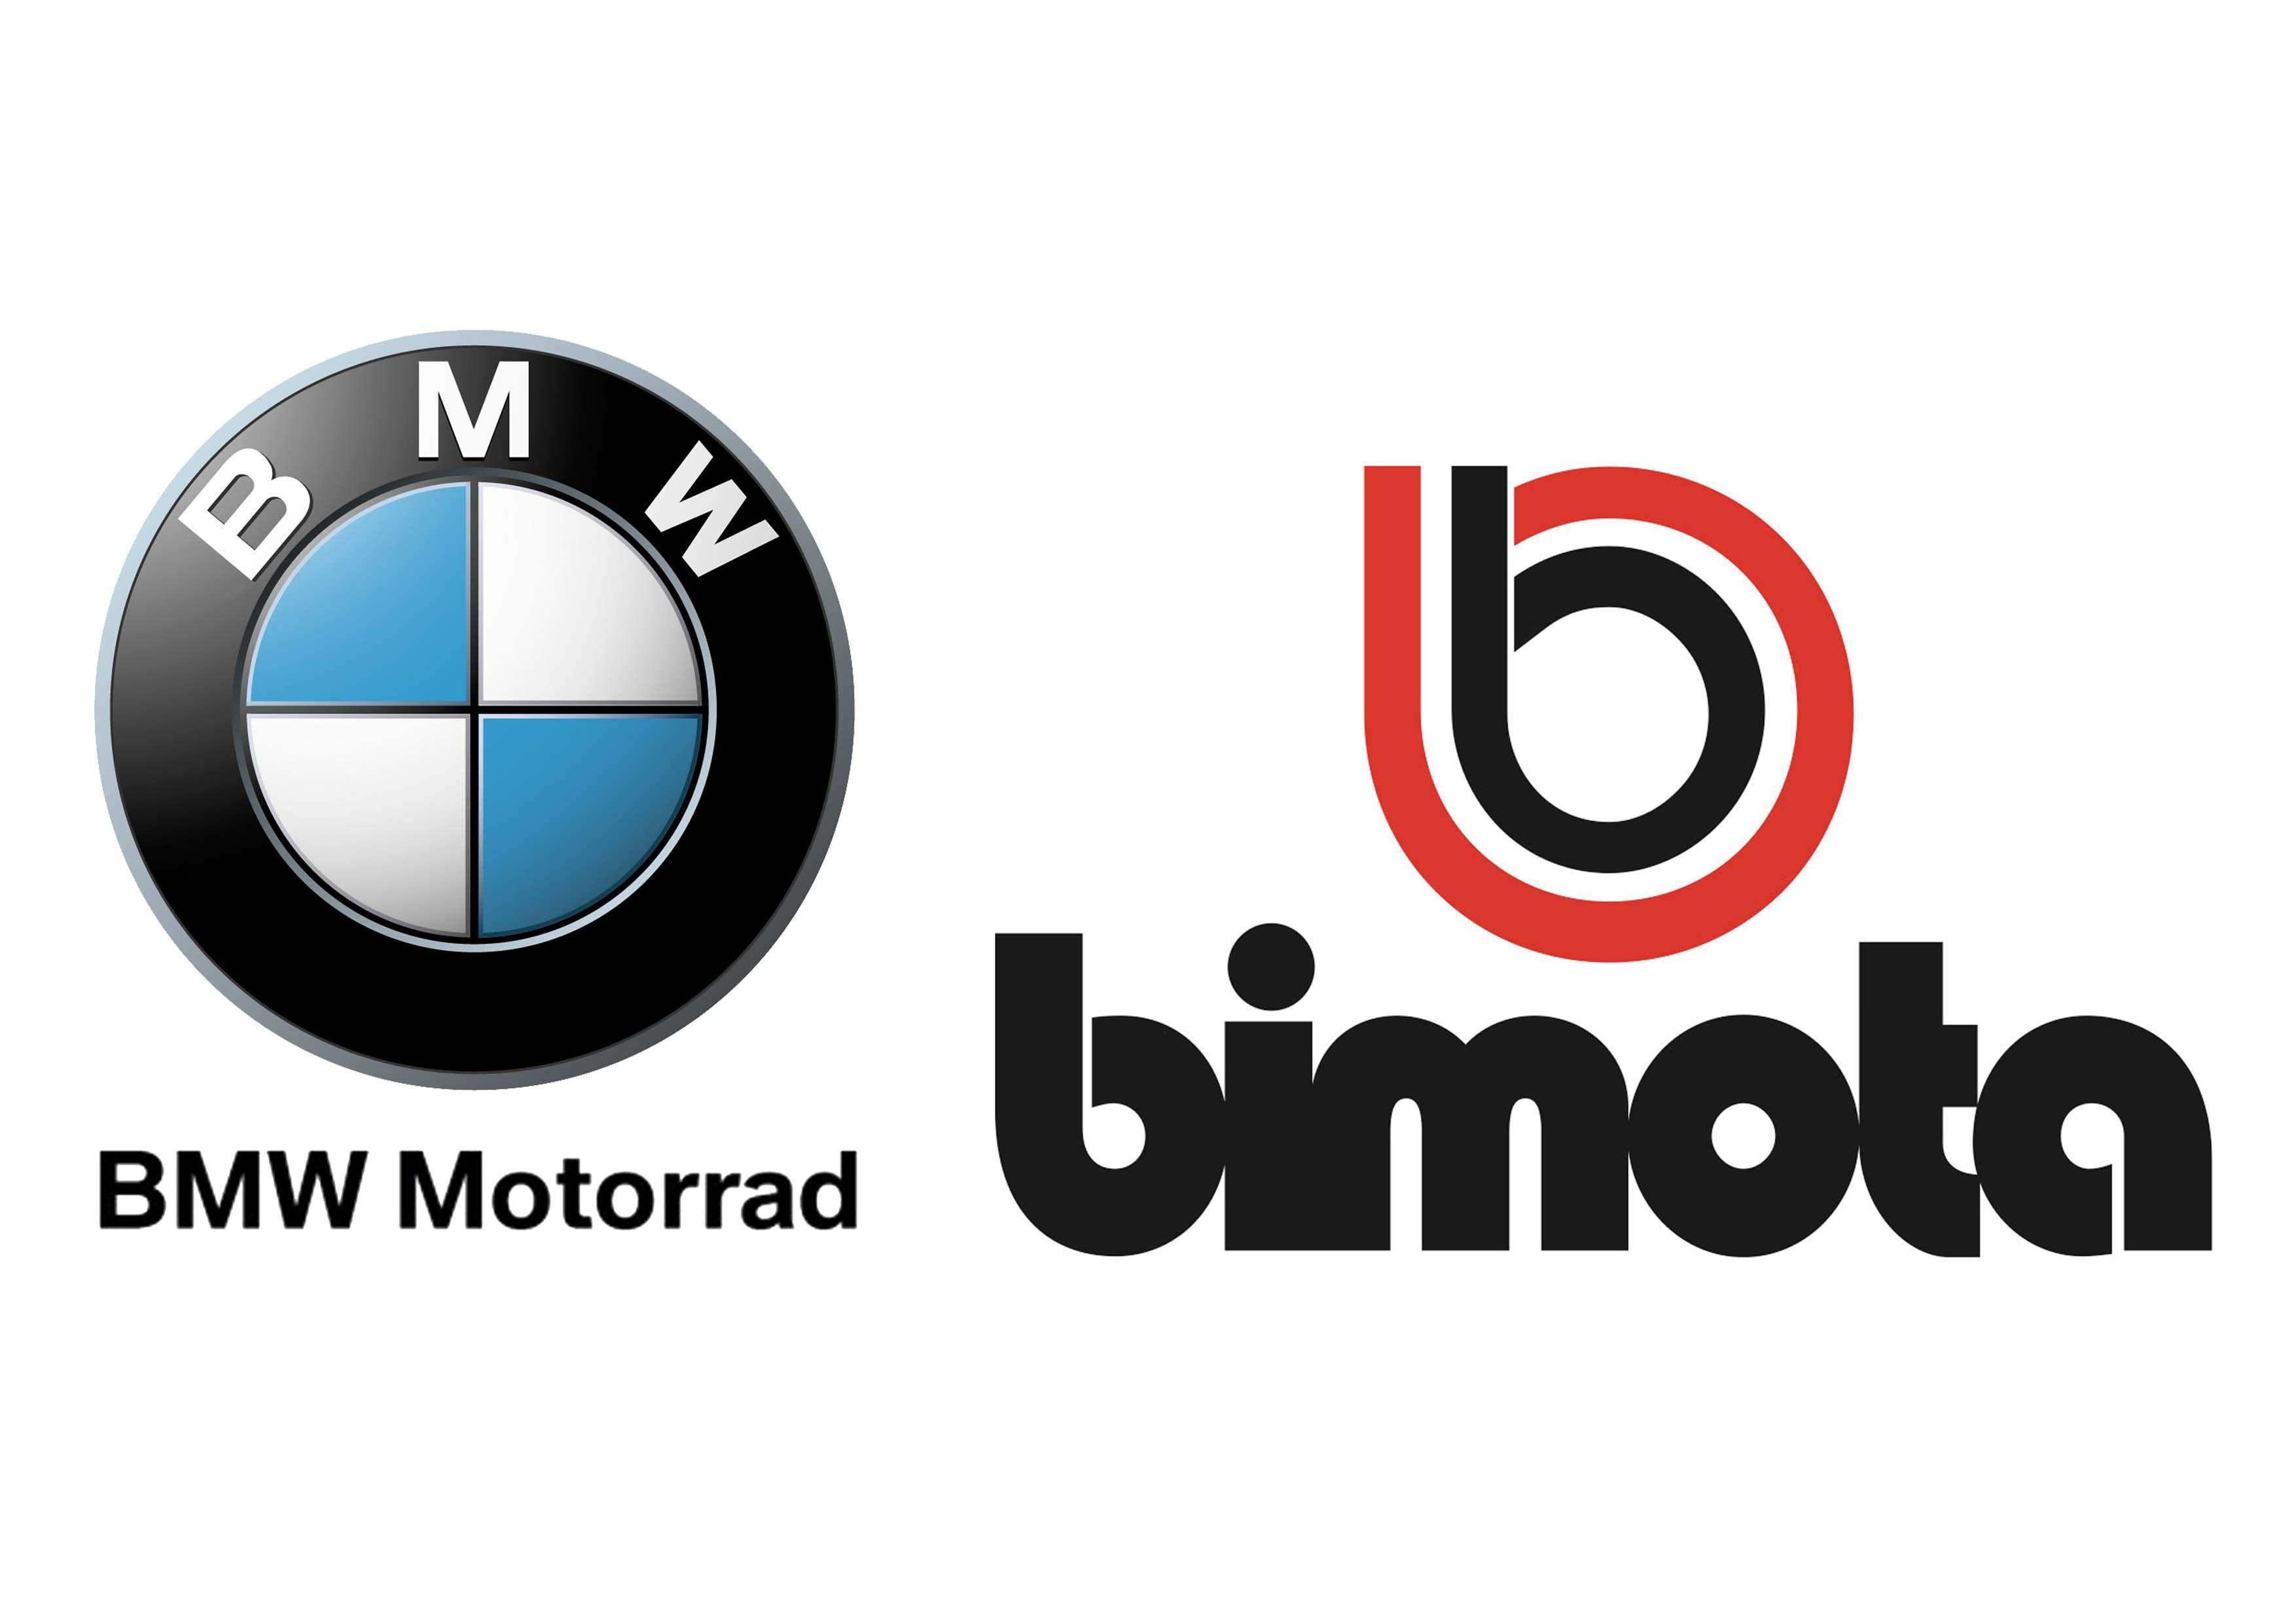 BMW Motorcycle Logo - BMW Motorrad takes up cooperation partnership with Bimota | komarjohari